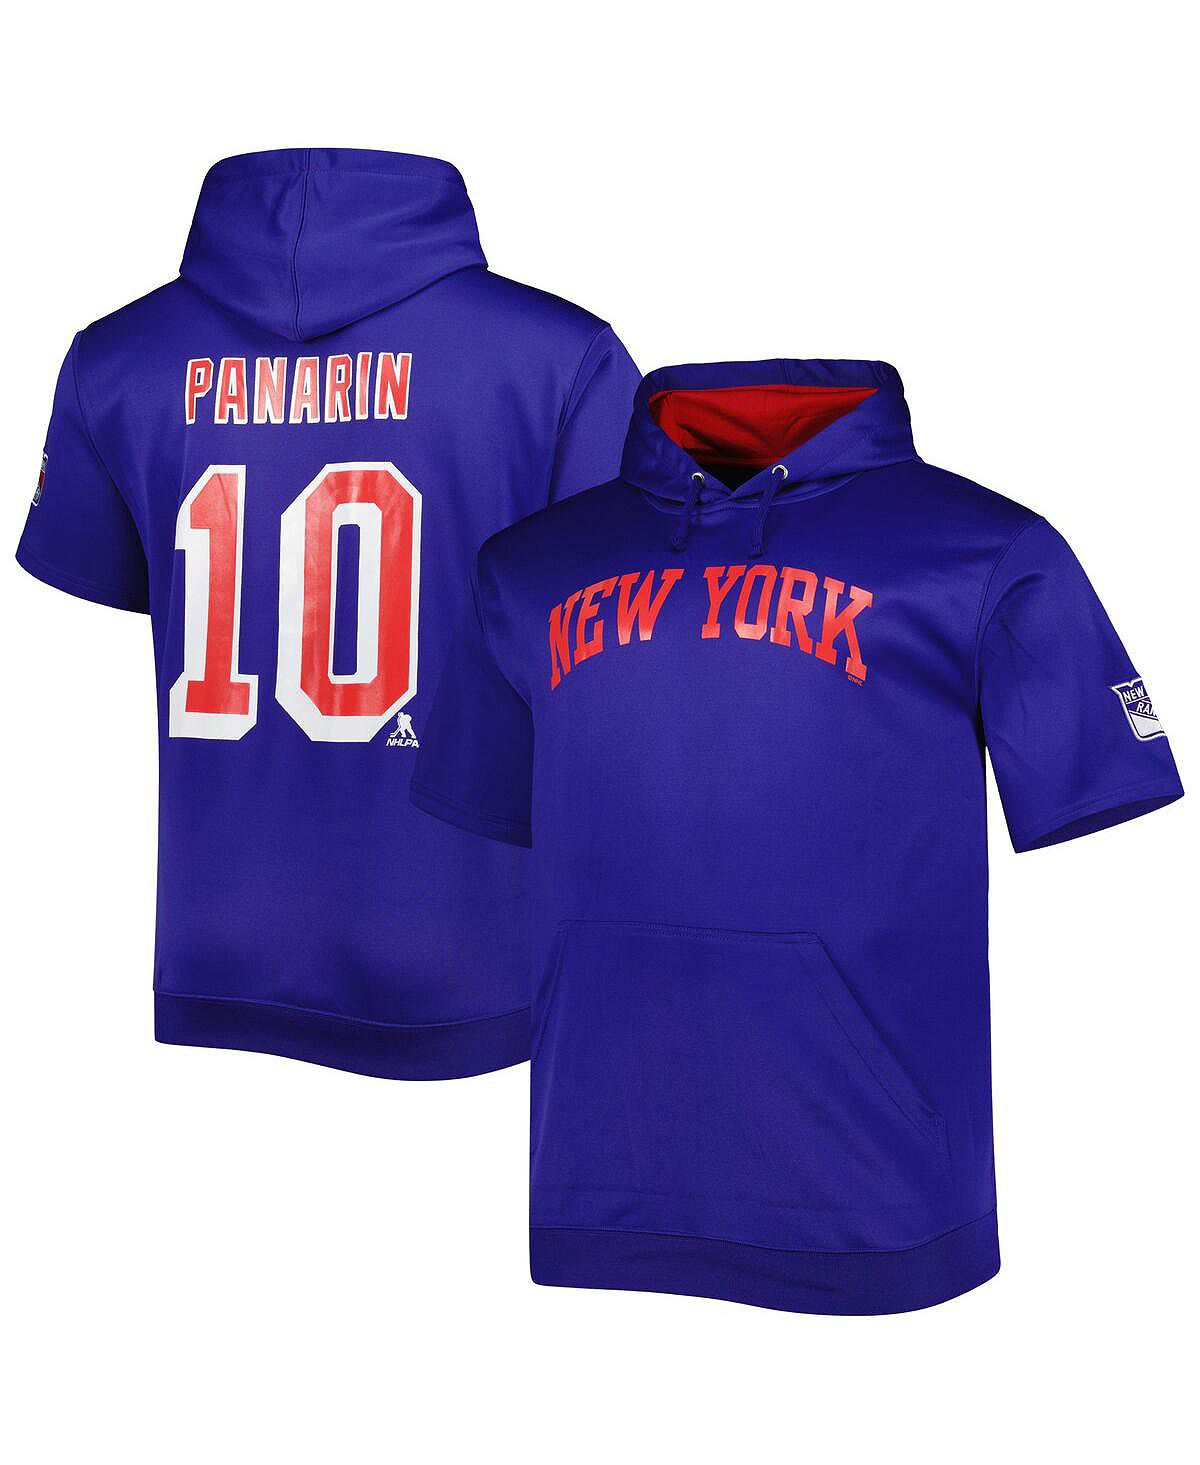 Мужской пуловер с капюшоном синего цвета с фирменным логотипом Artemi Panarin New York Rangers Big and Tall с именем и номером Fanatics